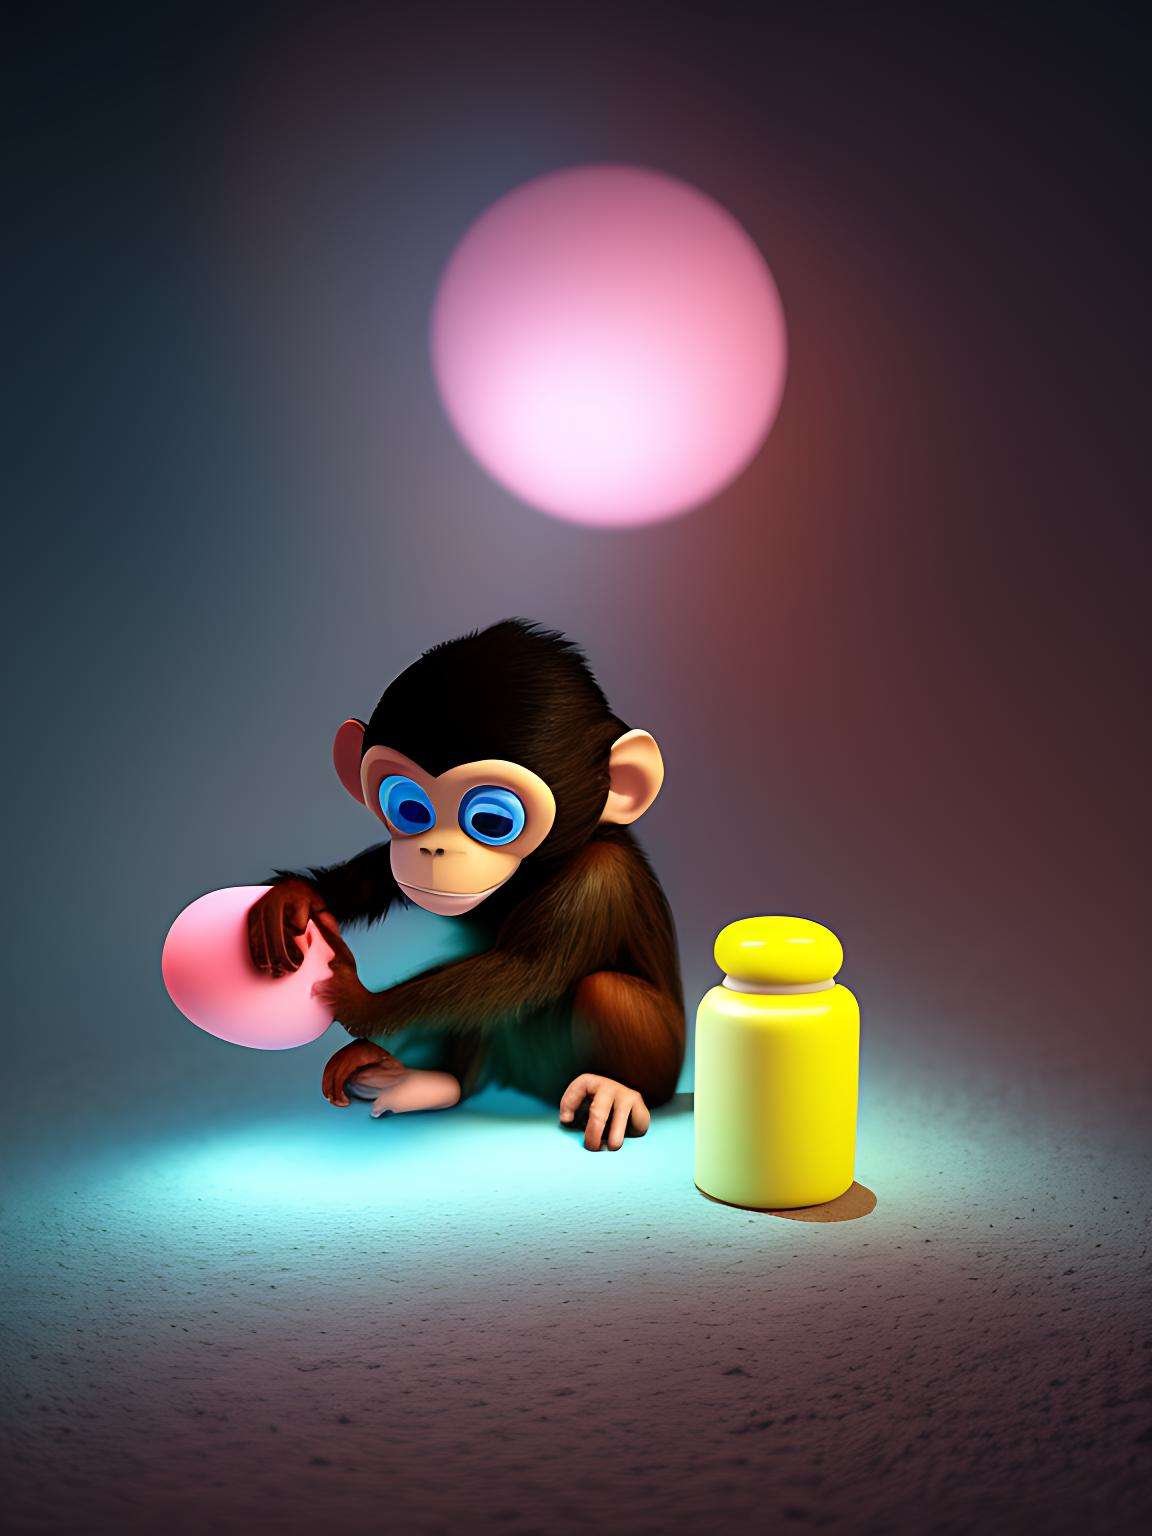 Blue-Eyed Monkey With Yellow Jar